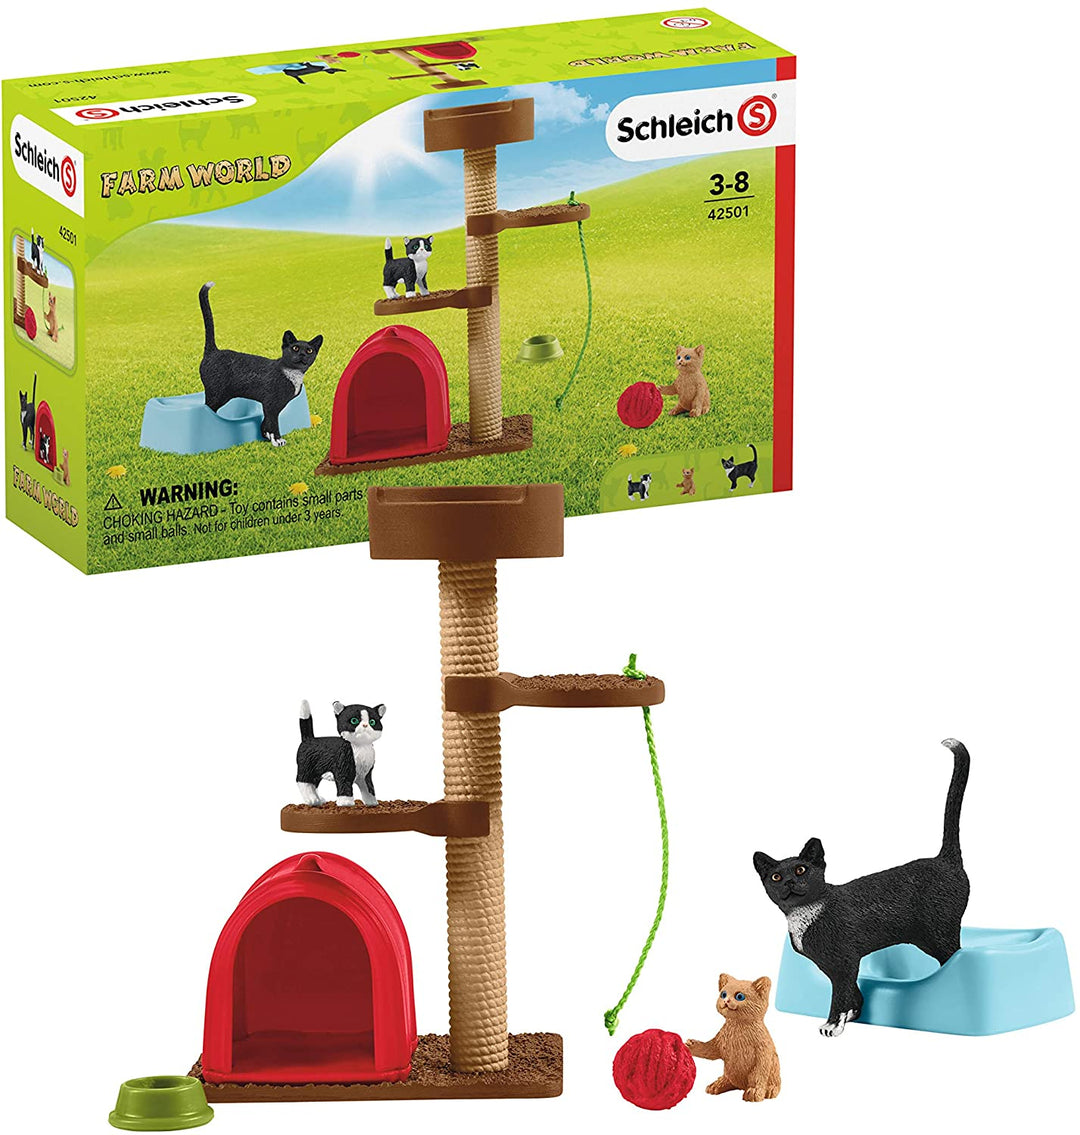 Schleich 42501 Tiempo de juego para Cute Cats Farm World